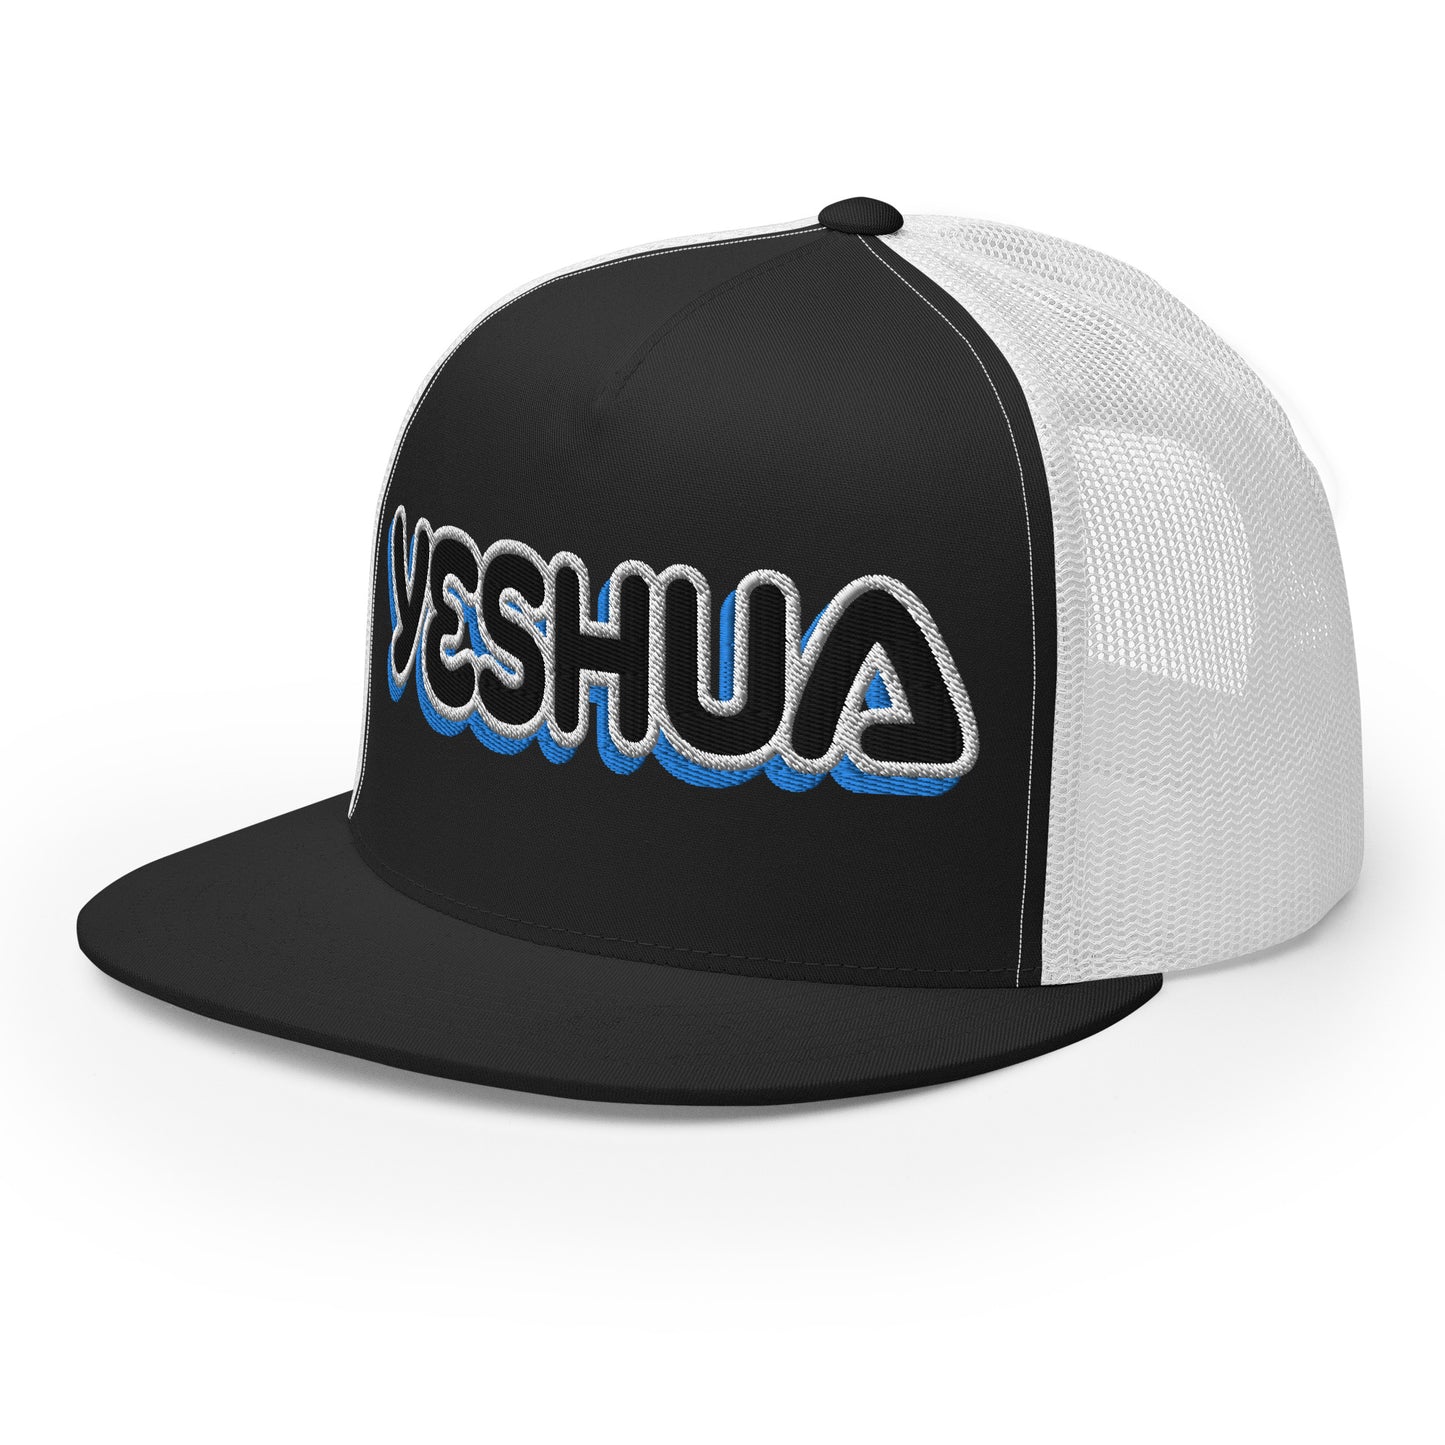 YESHUA- Trucker Cap